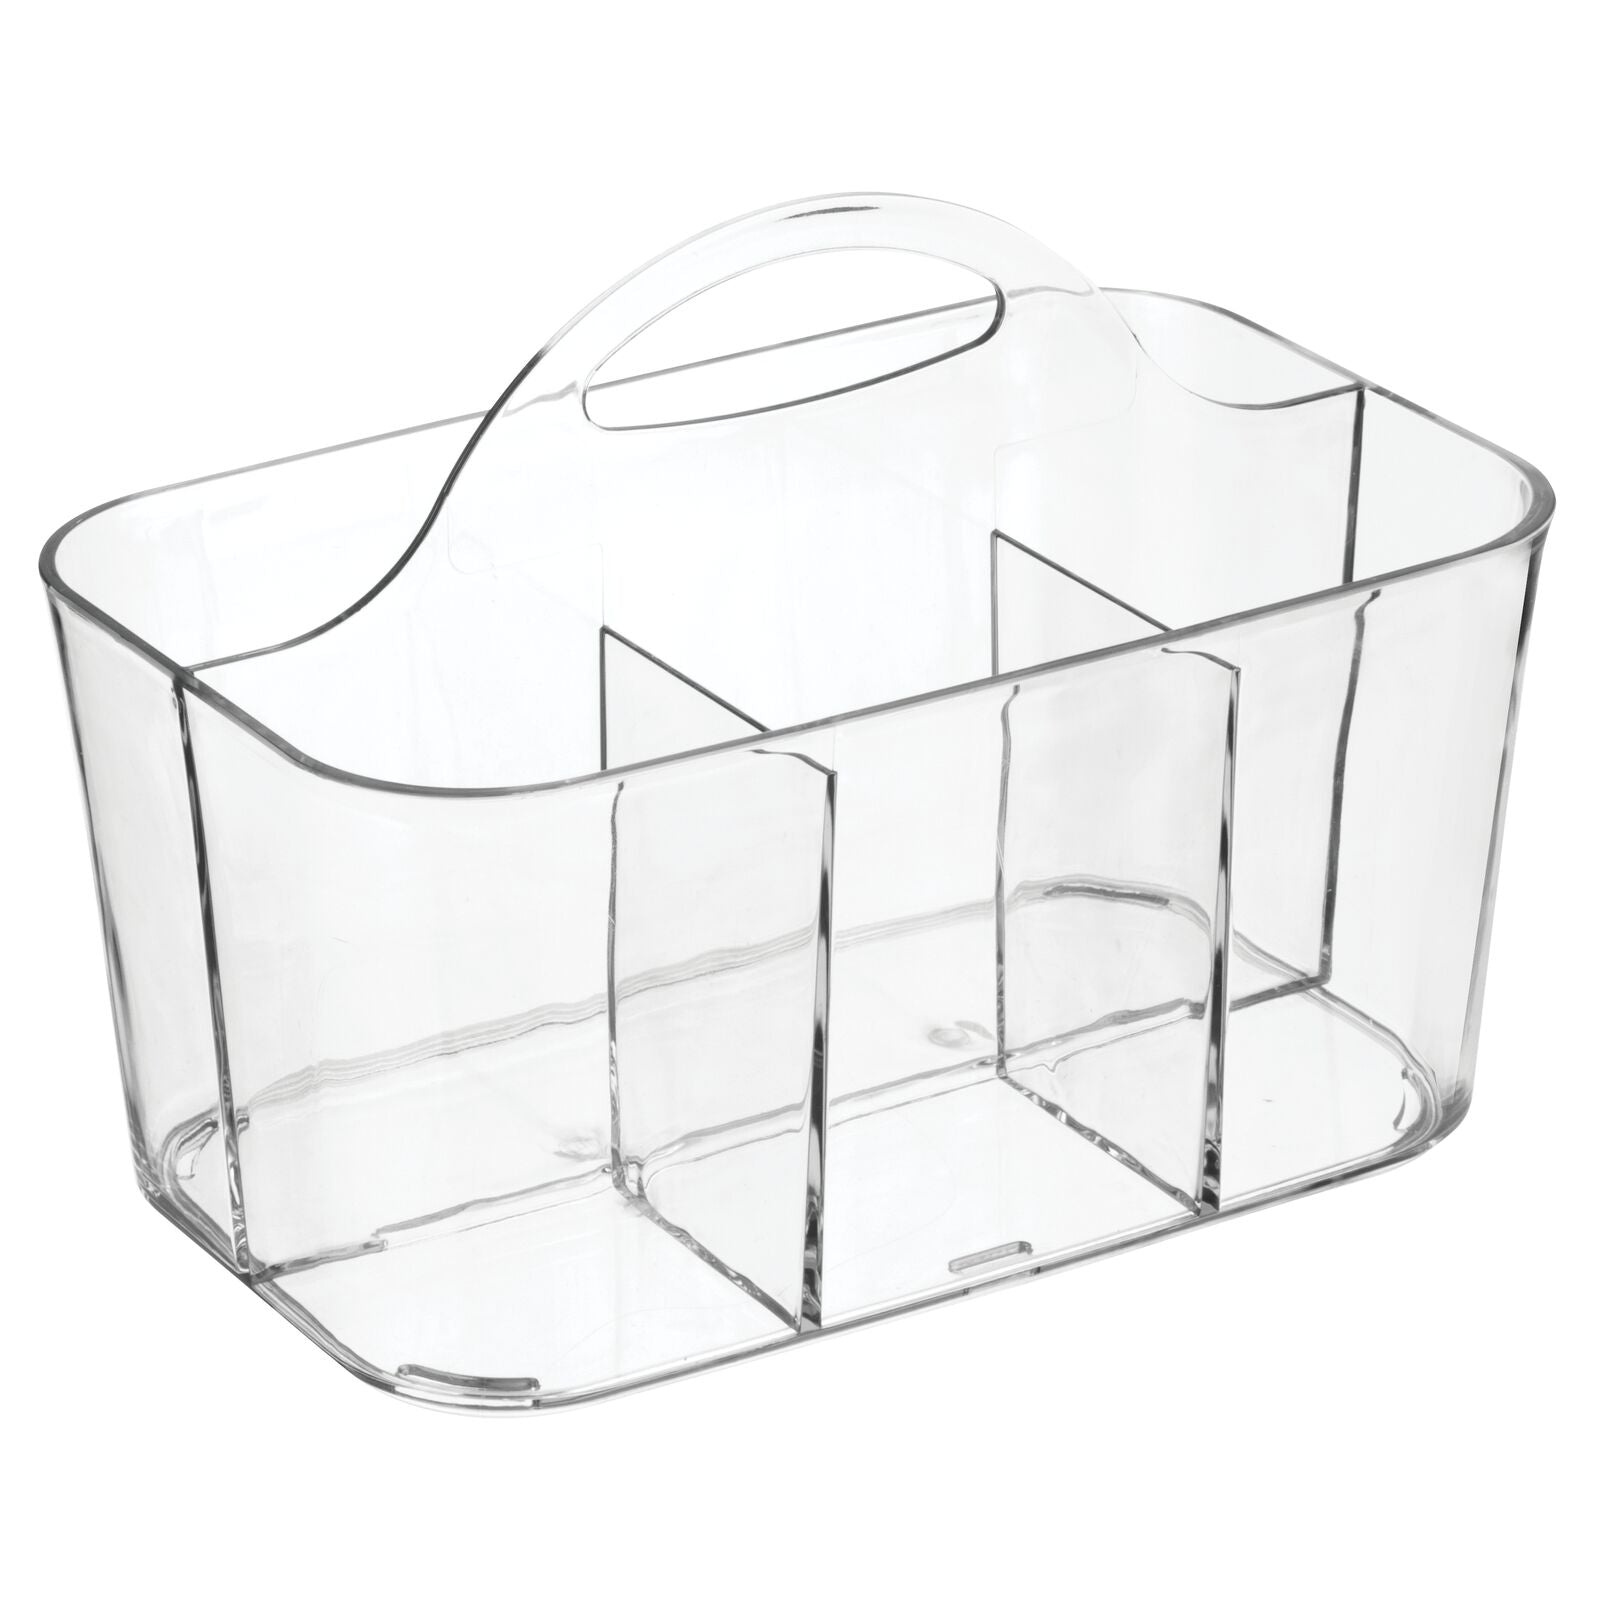 Mdesign Plastic Shower Caddy Storage Organizer Basket, Handle, 2